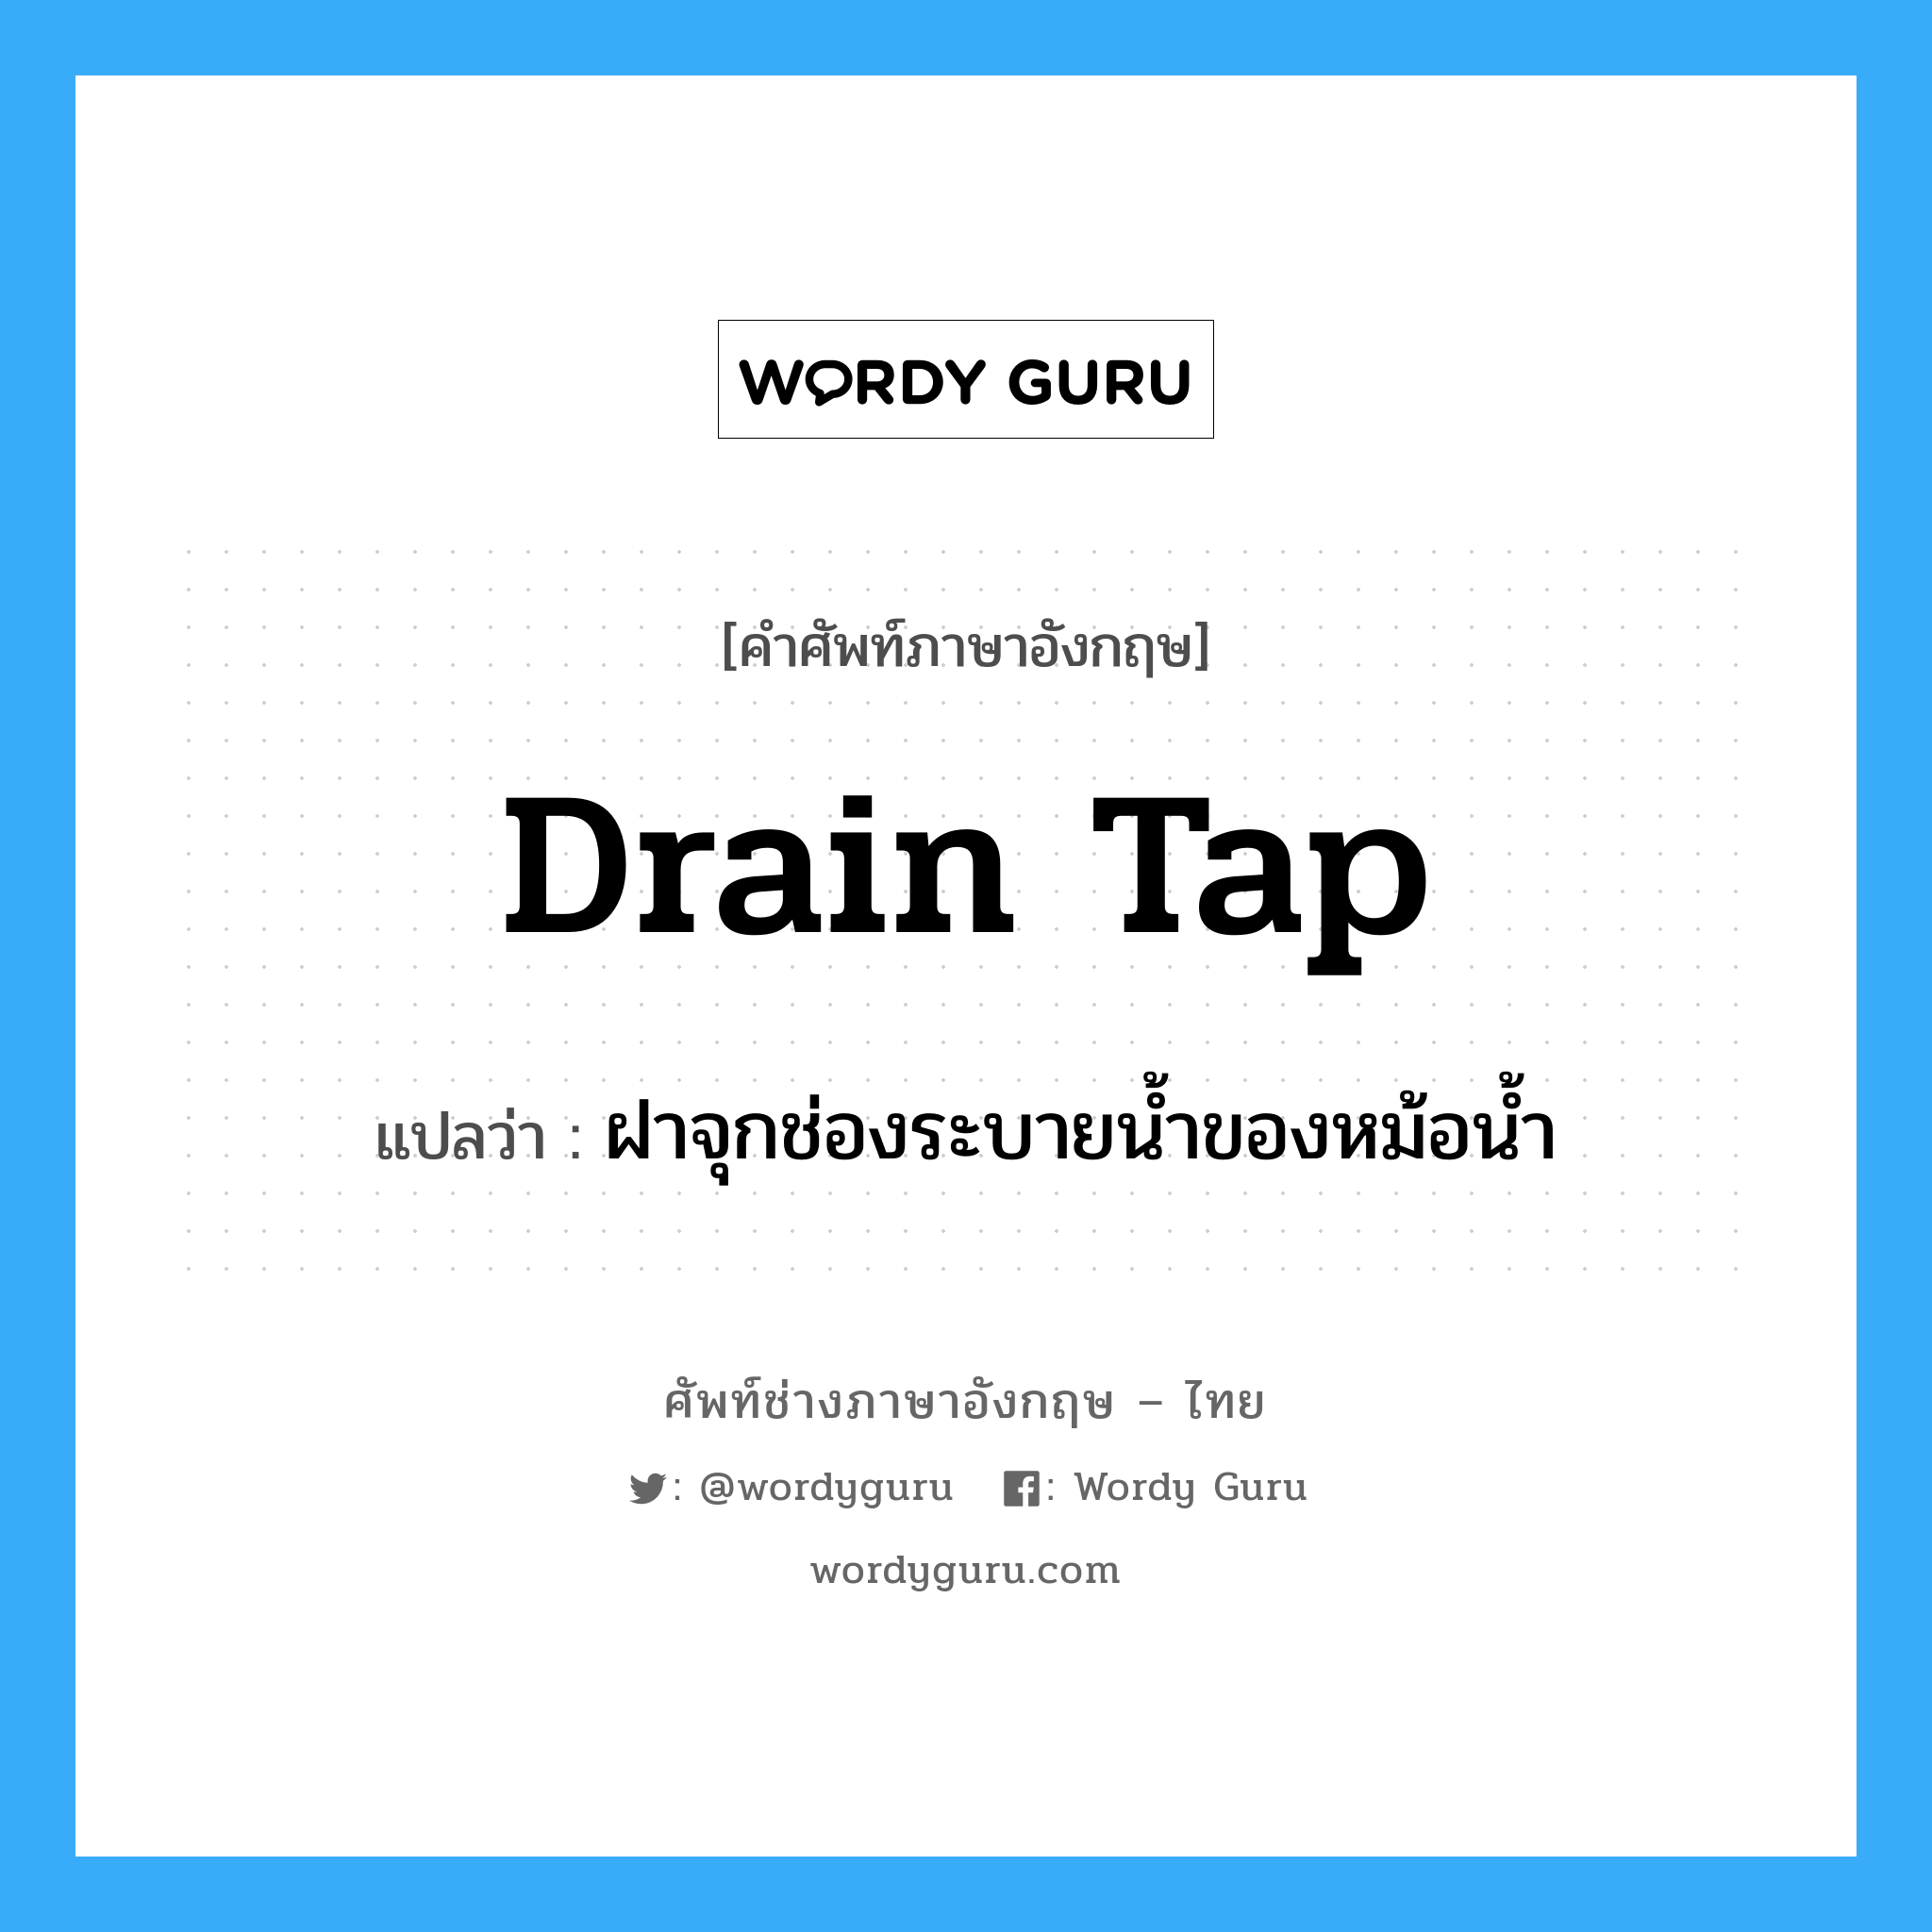 drain tap แปลว่า?, คำศัพท์ช่างภาษาอังกฤษ - ไทย drain tap คำศัพท์ภาษาอังกฤษ drain tap แปลว่า ฝาจุกช่องระบายน้ำของหม้อน้ำ